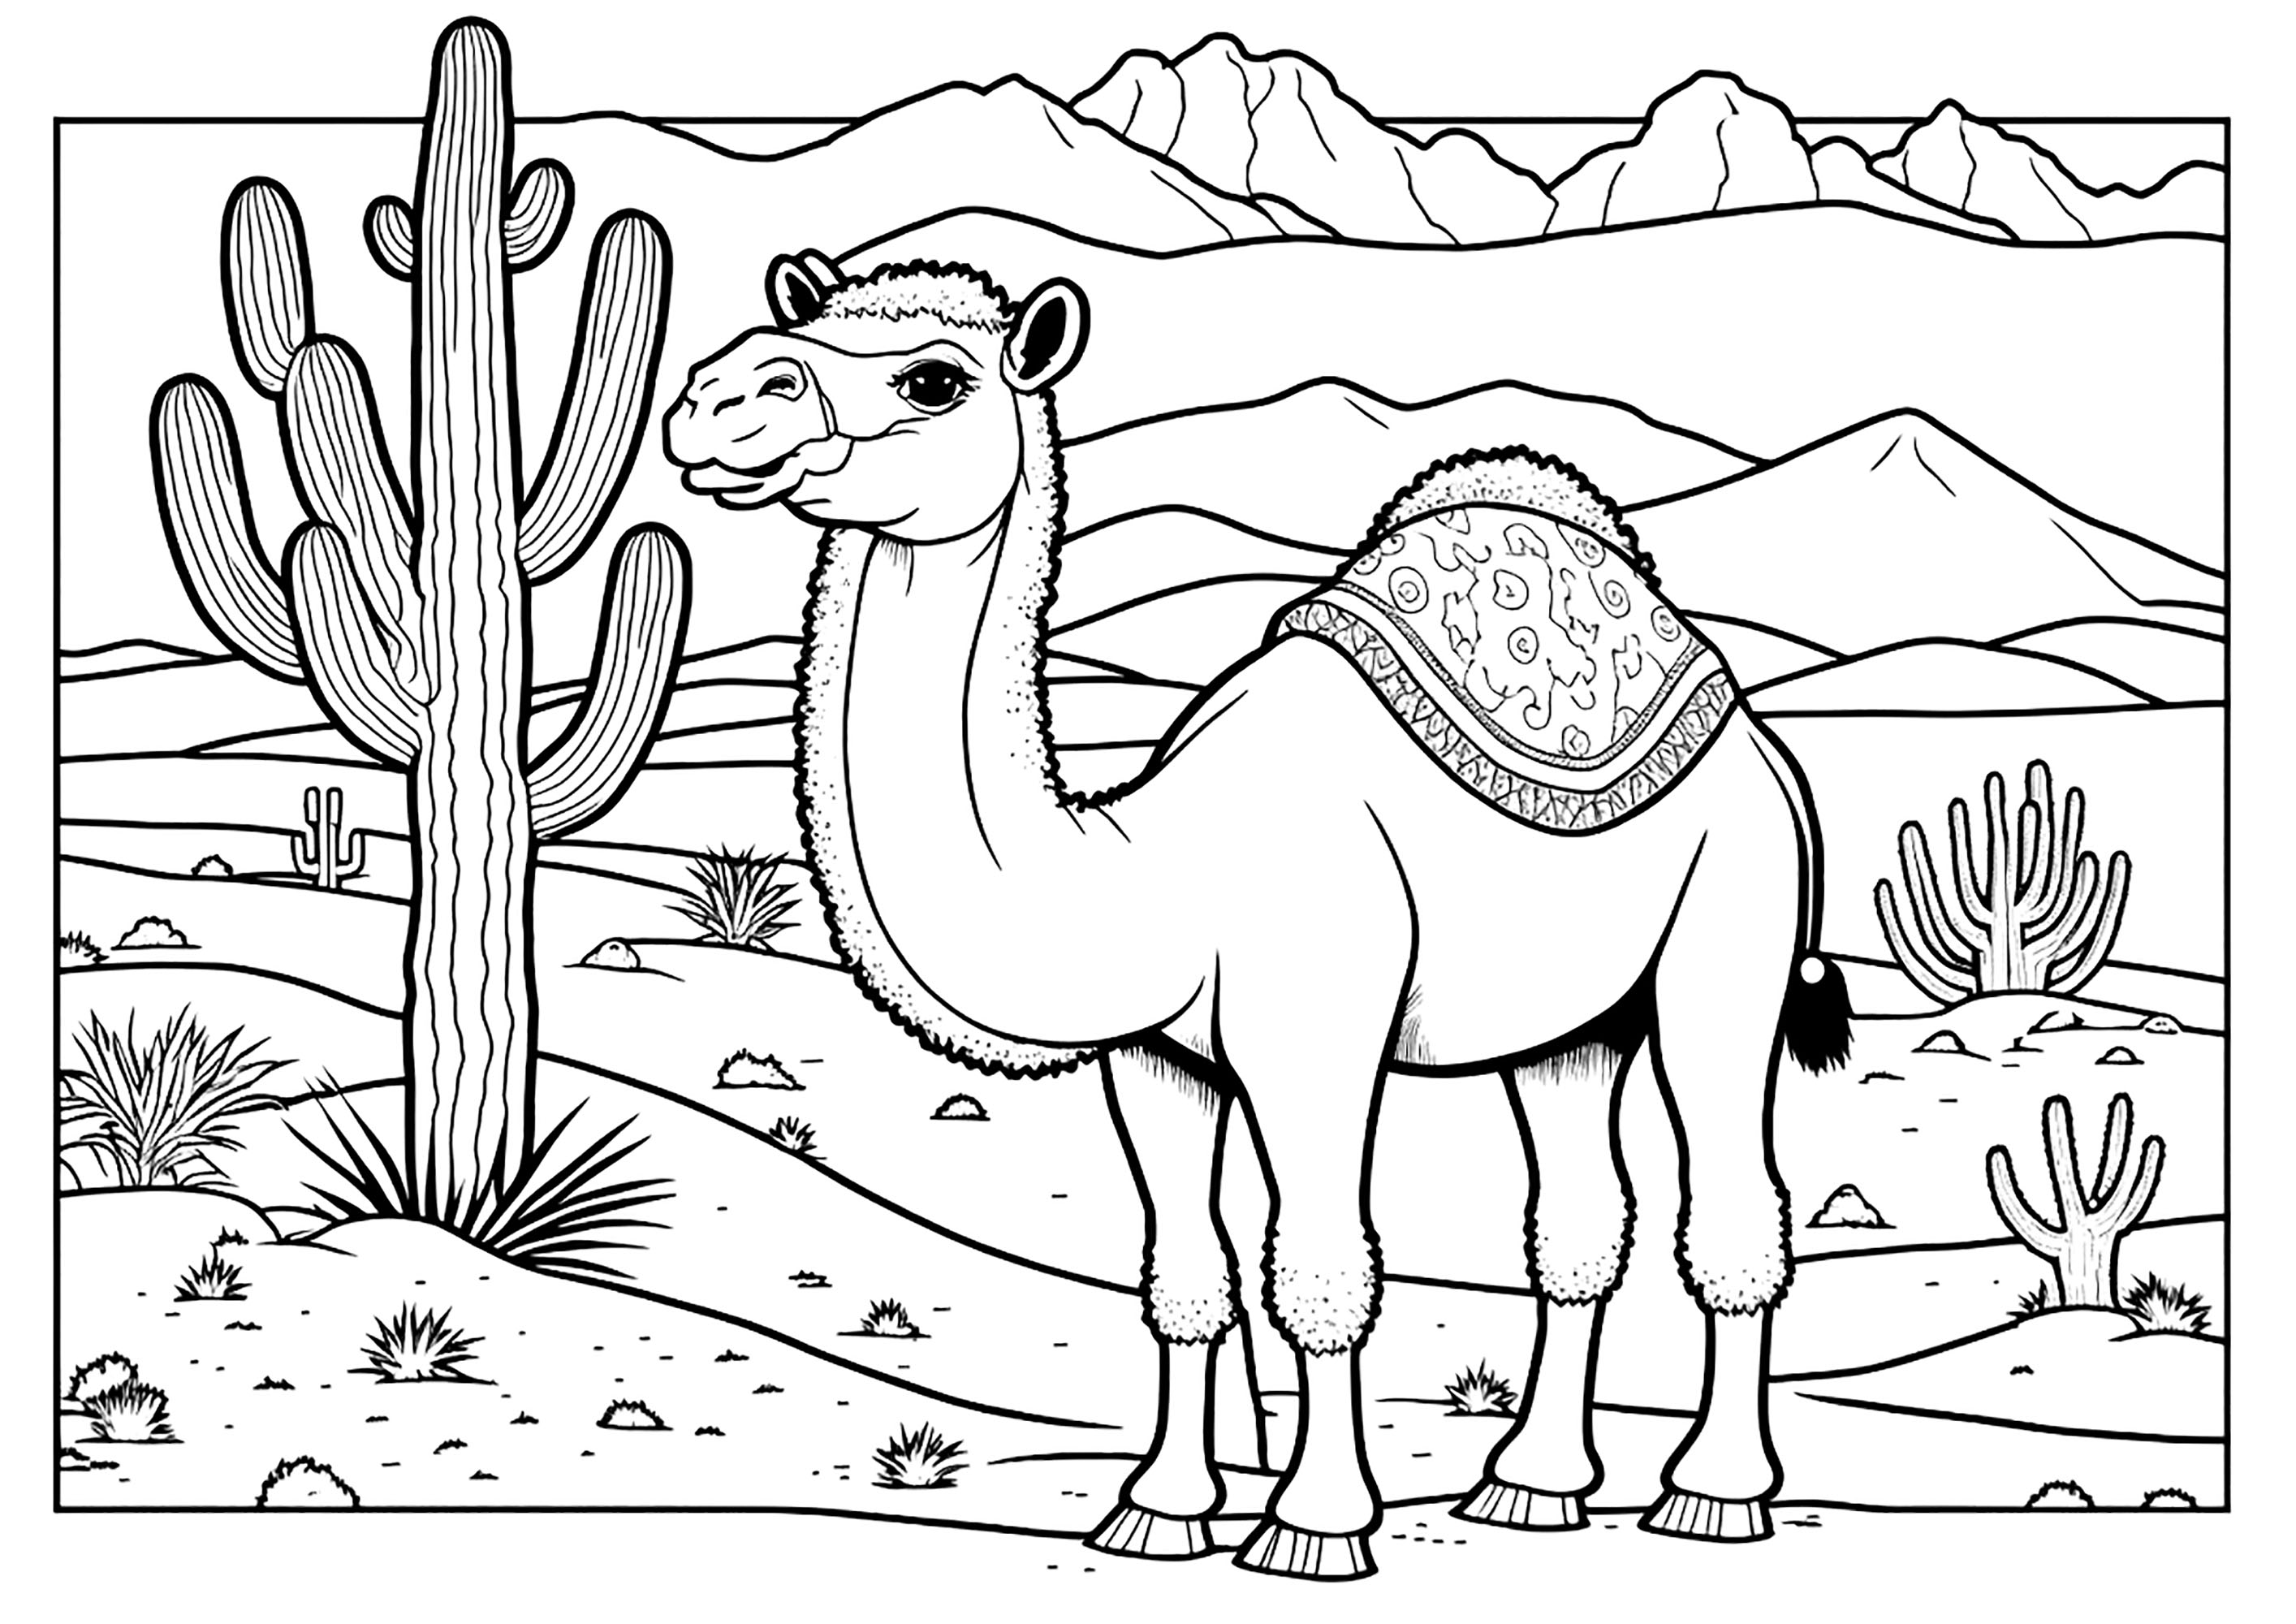 Dromedario en el desierto, con un gran cactus. Este hermoso camello está de pie sobre la arena caliente, con sus largas patas y su cuello alargado. Al fondo se ven dunas de arena y montañas. Un gran cactus se alza majestuoso a la izquierda del camello.